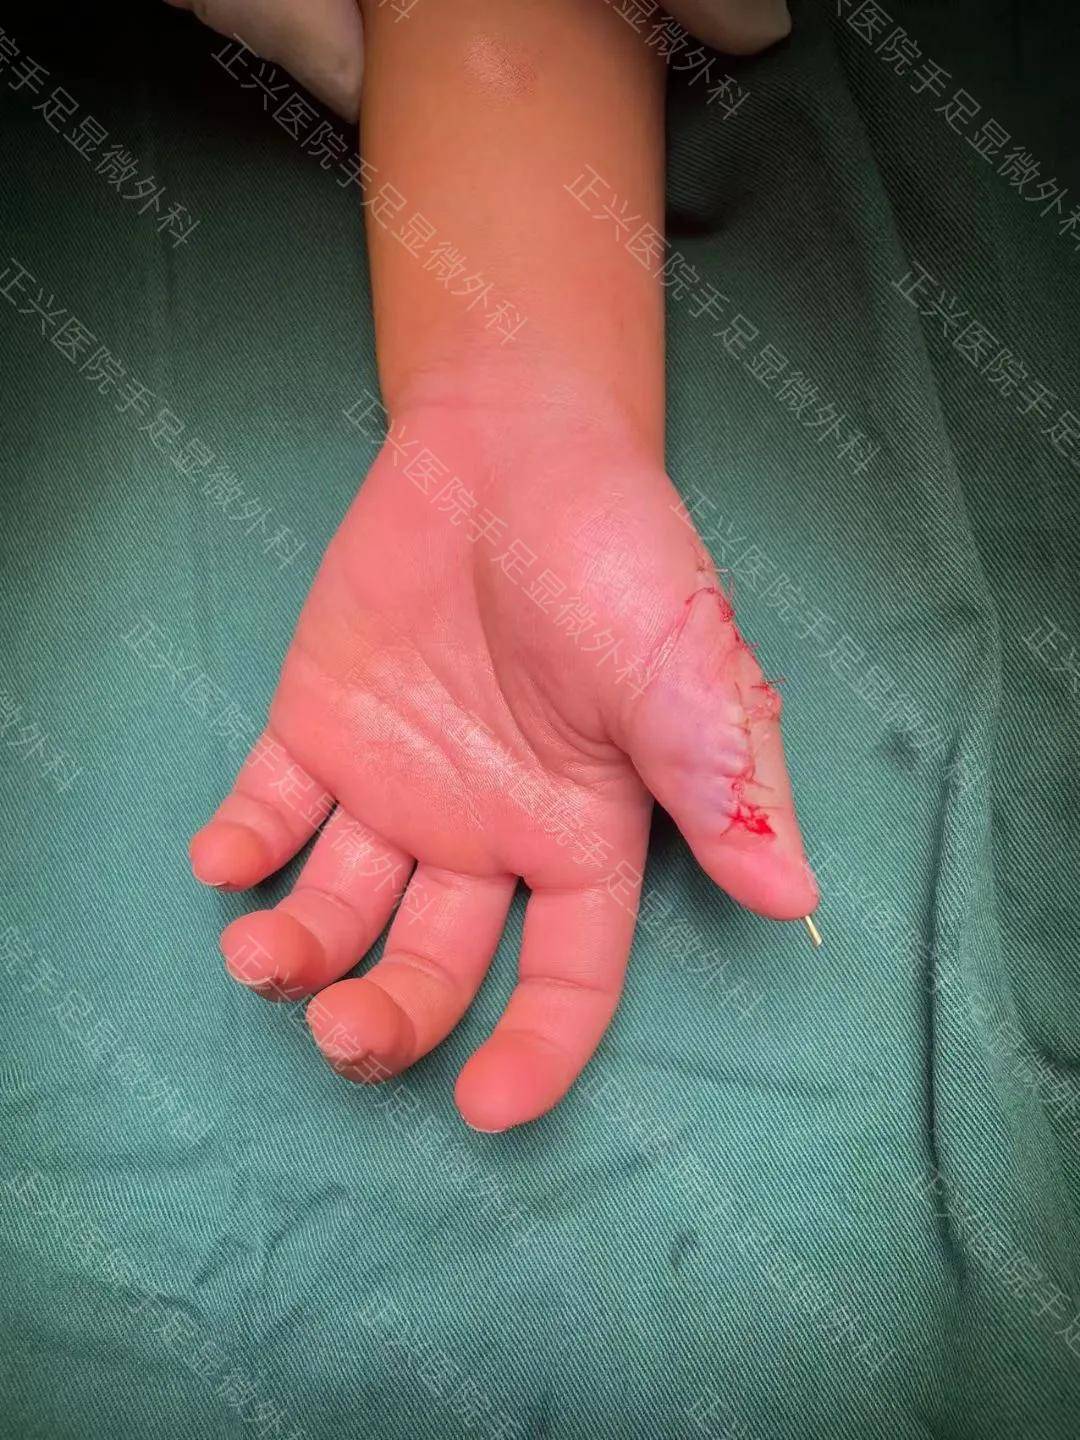 六指症手术图片